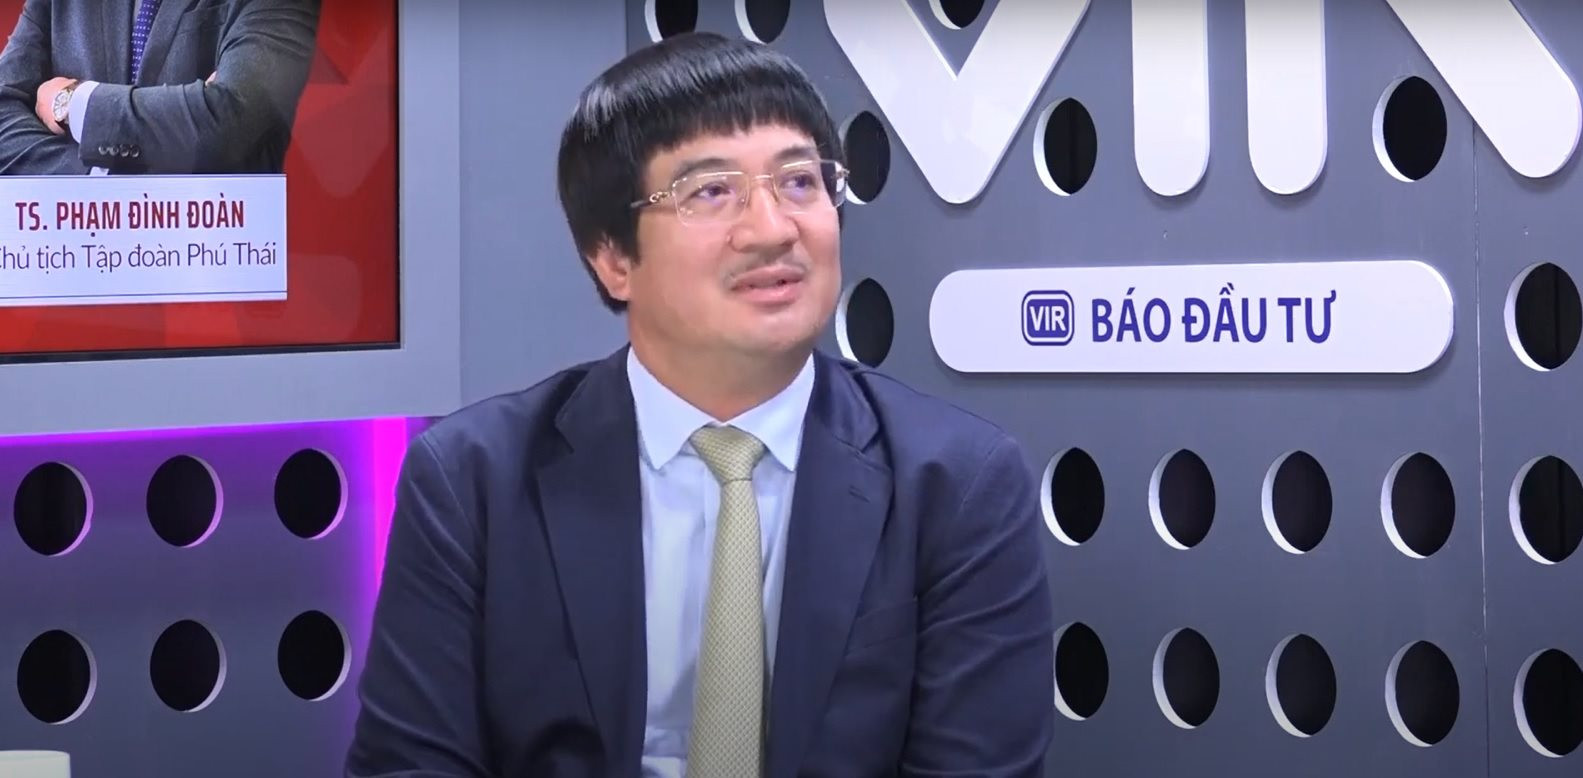 Chủ tịch Tập đoàn Phú Thái: Đừng vì sai phạm của cá nhân mà hủy hoại cả doanh nghiệp